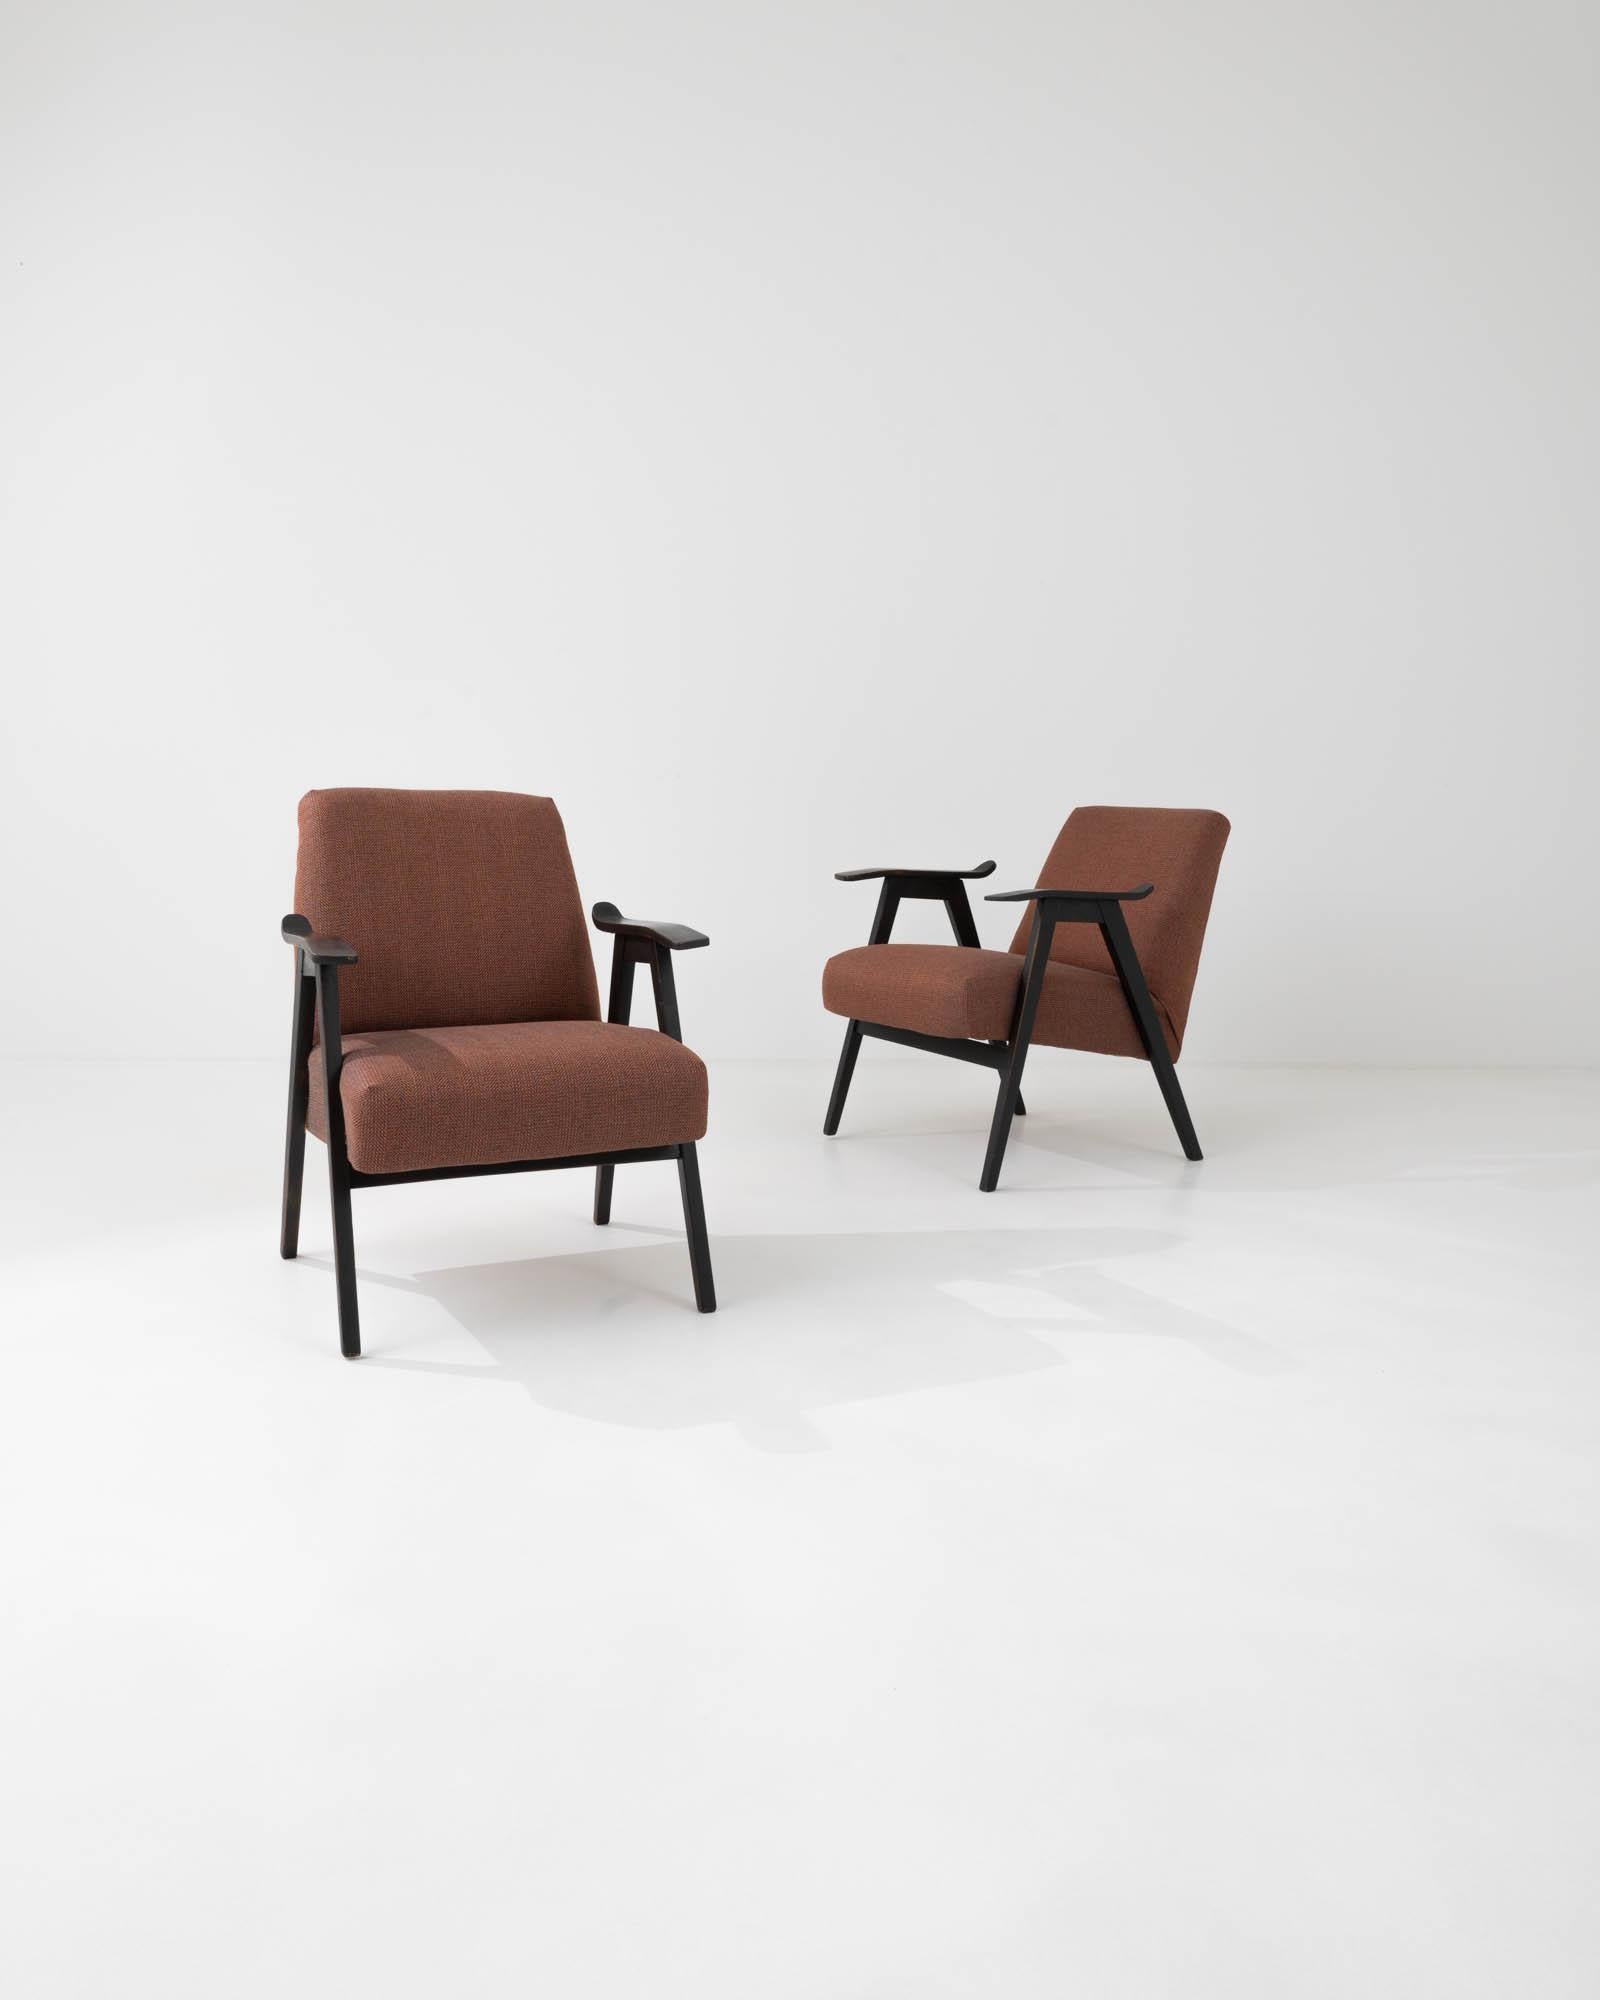 Diese Sessel, die sich durch ihre klaren Linien und ihre minimalistische Silhouette auszeichnen, wurden in den 1960er Jahren von dem berühmten tschechischen Möbelhersteller gefertigt. Die subtile Kurve und die sanfte Neigung der Bugholzarmlehnen